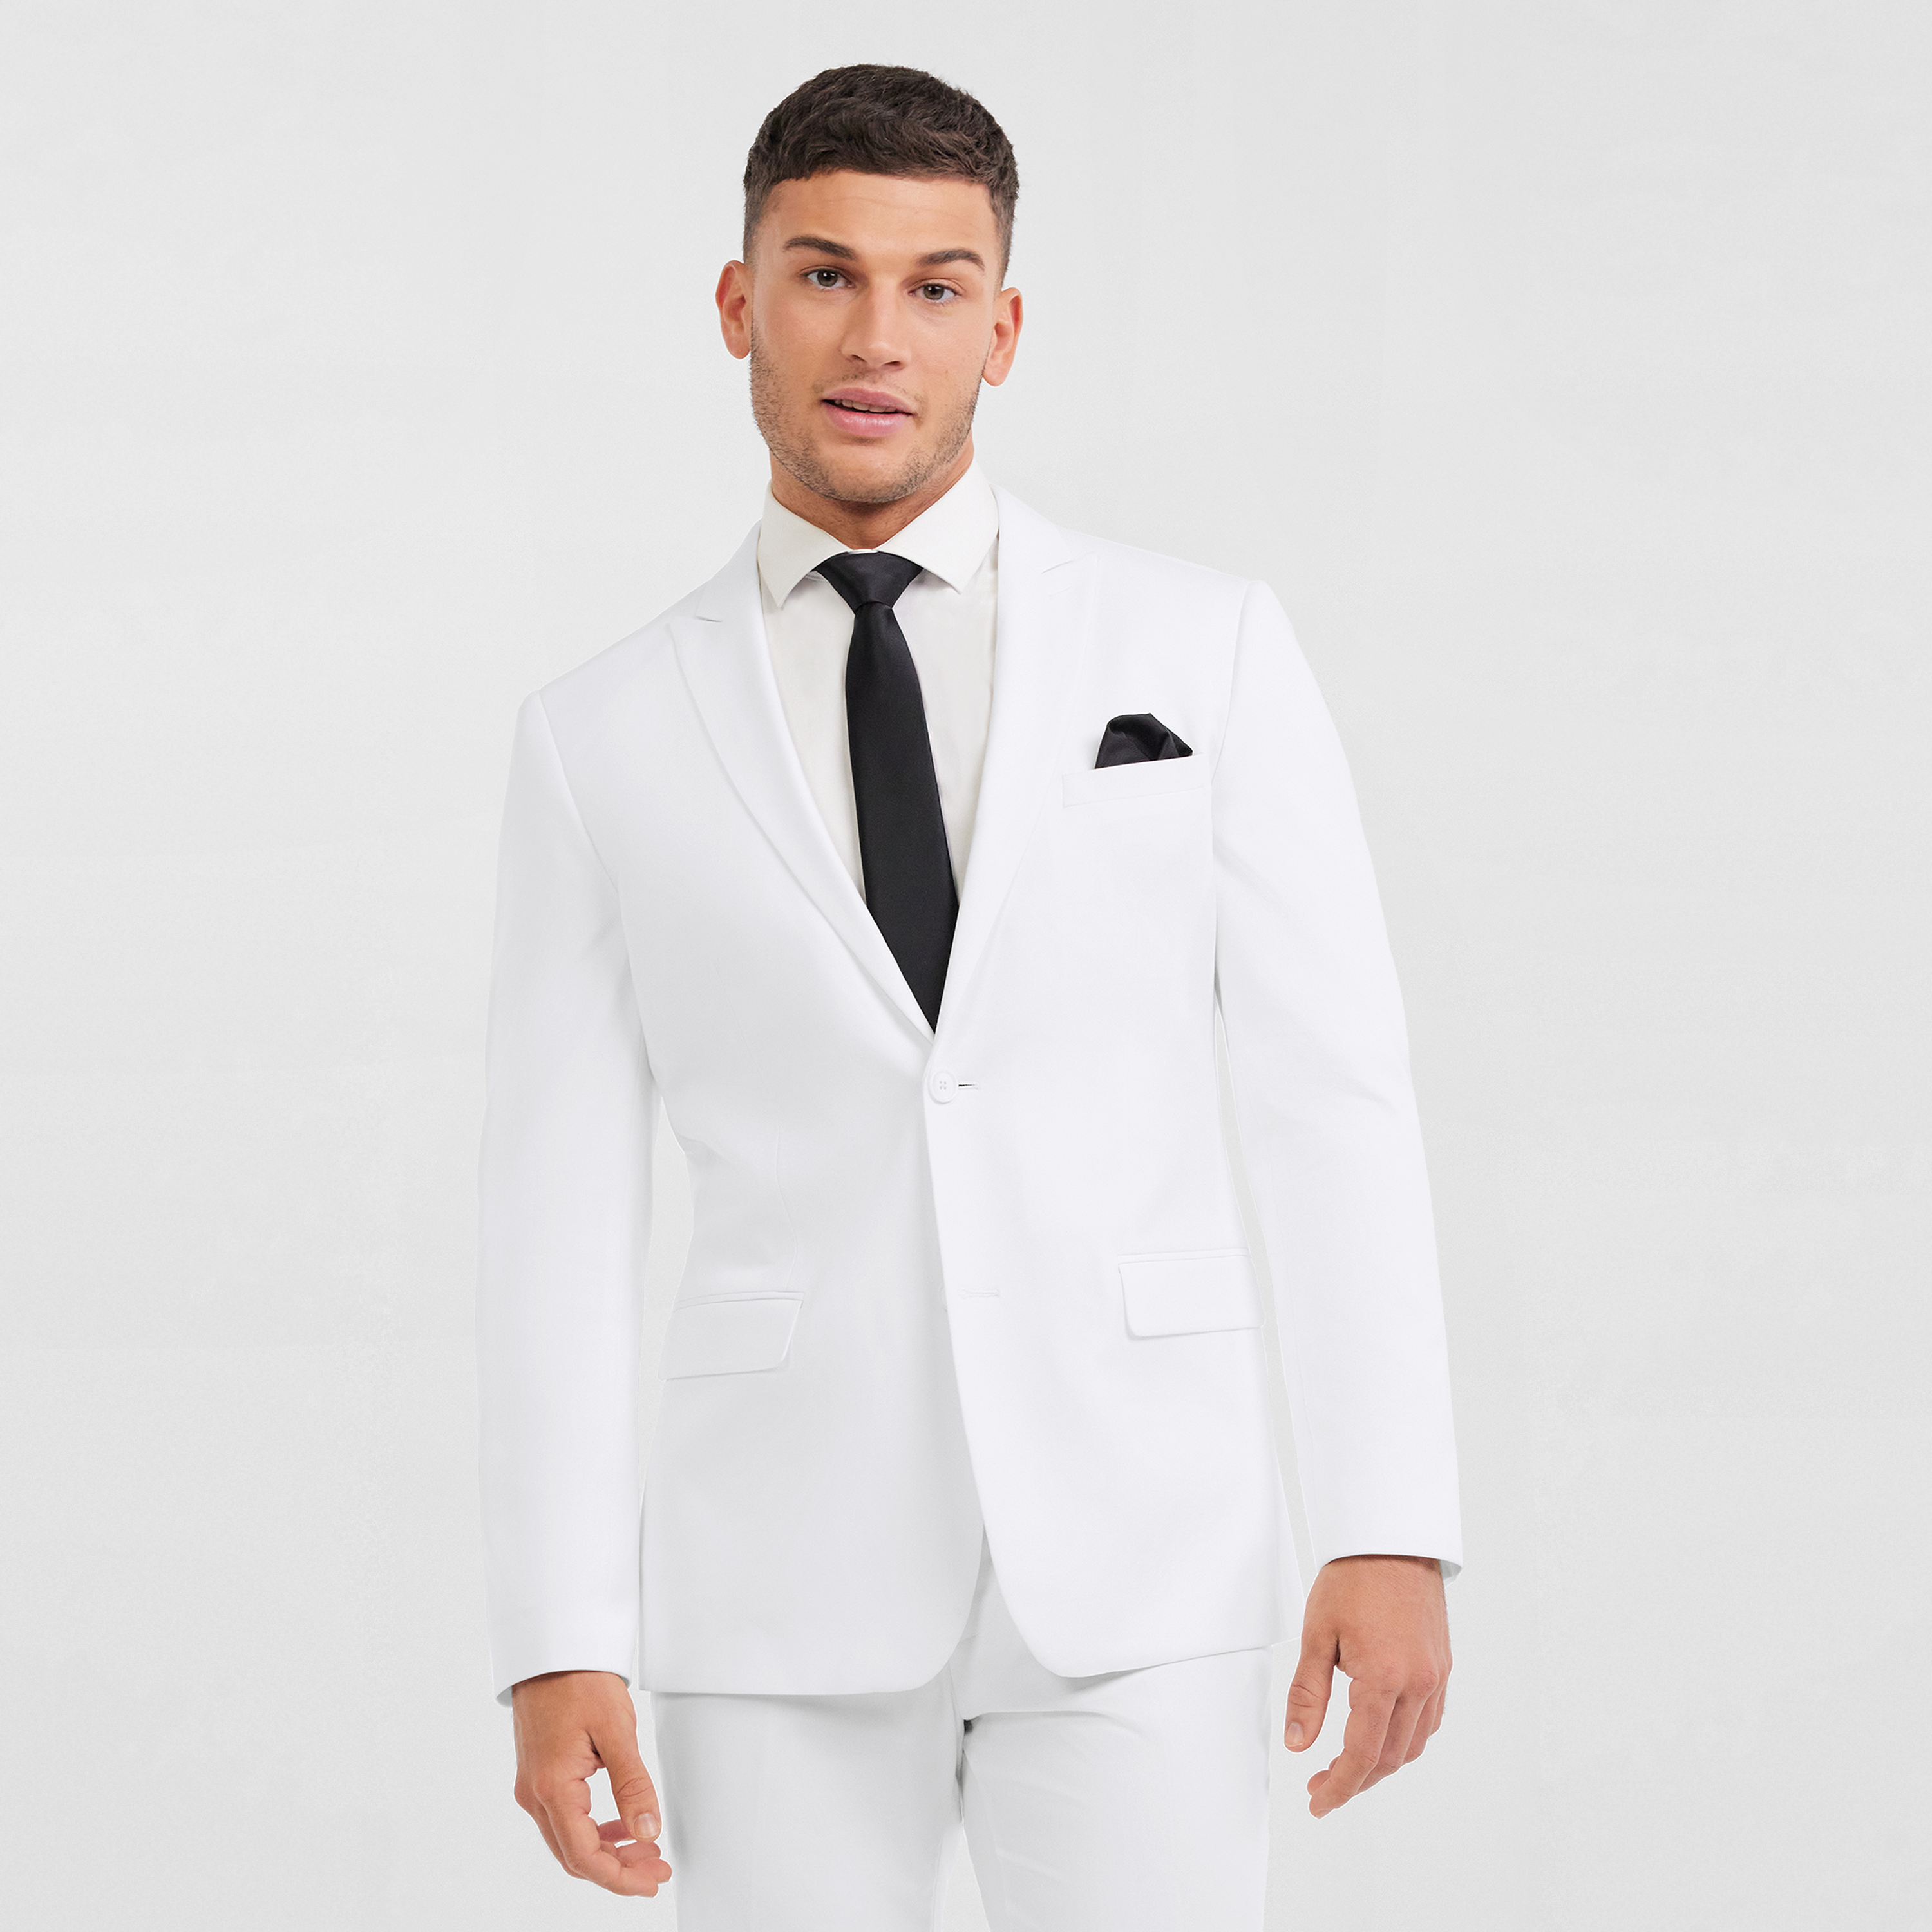 Men Suits - Italian Cut Groom Suits: Jacket + Vest + Trousers Suit Set –  Varucci Style